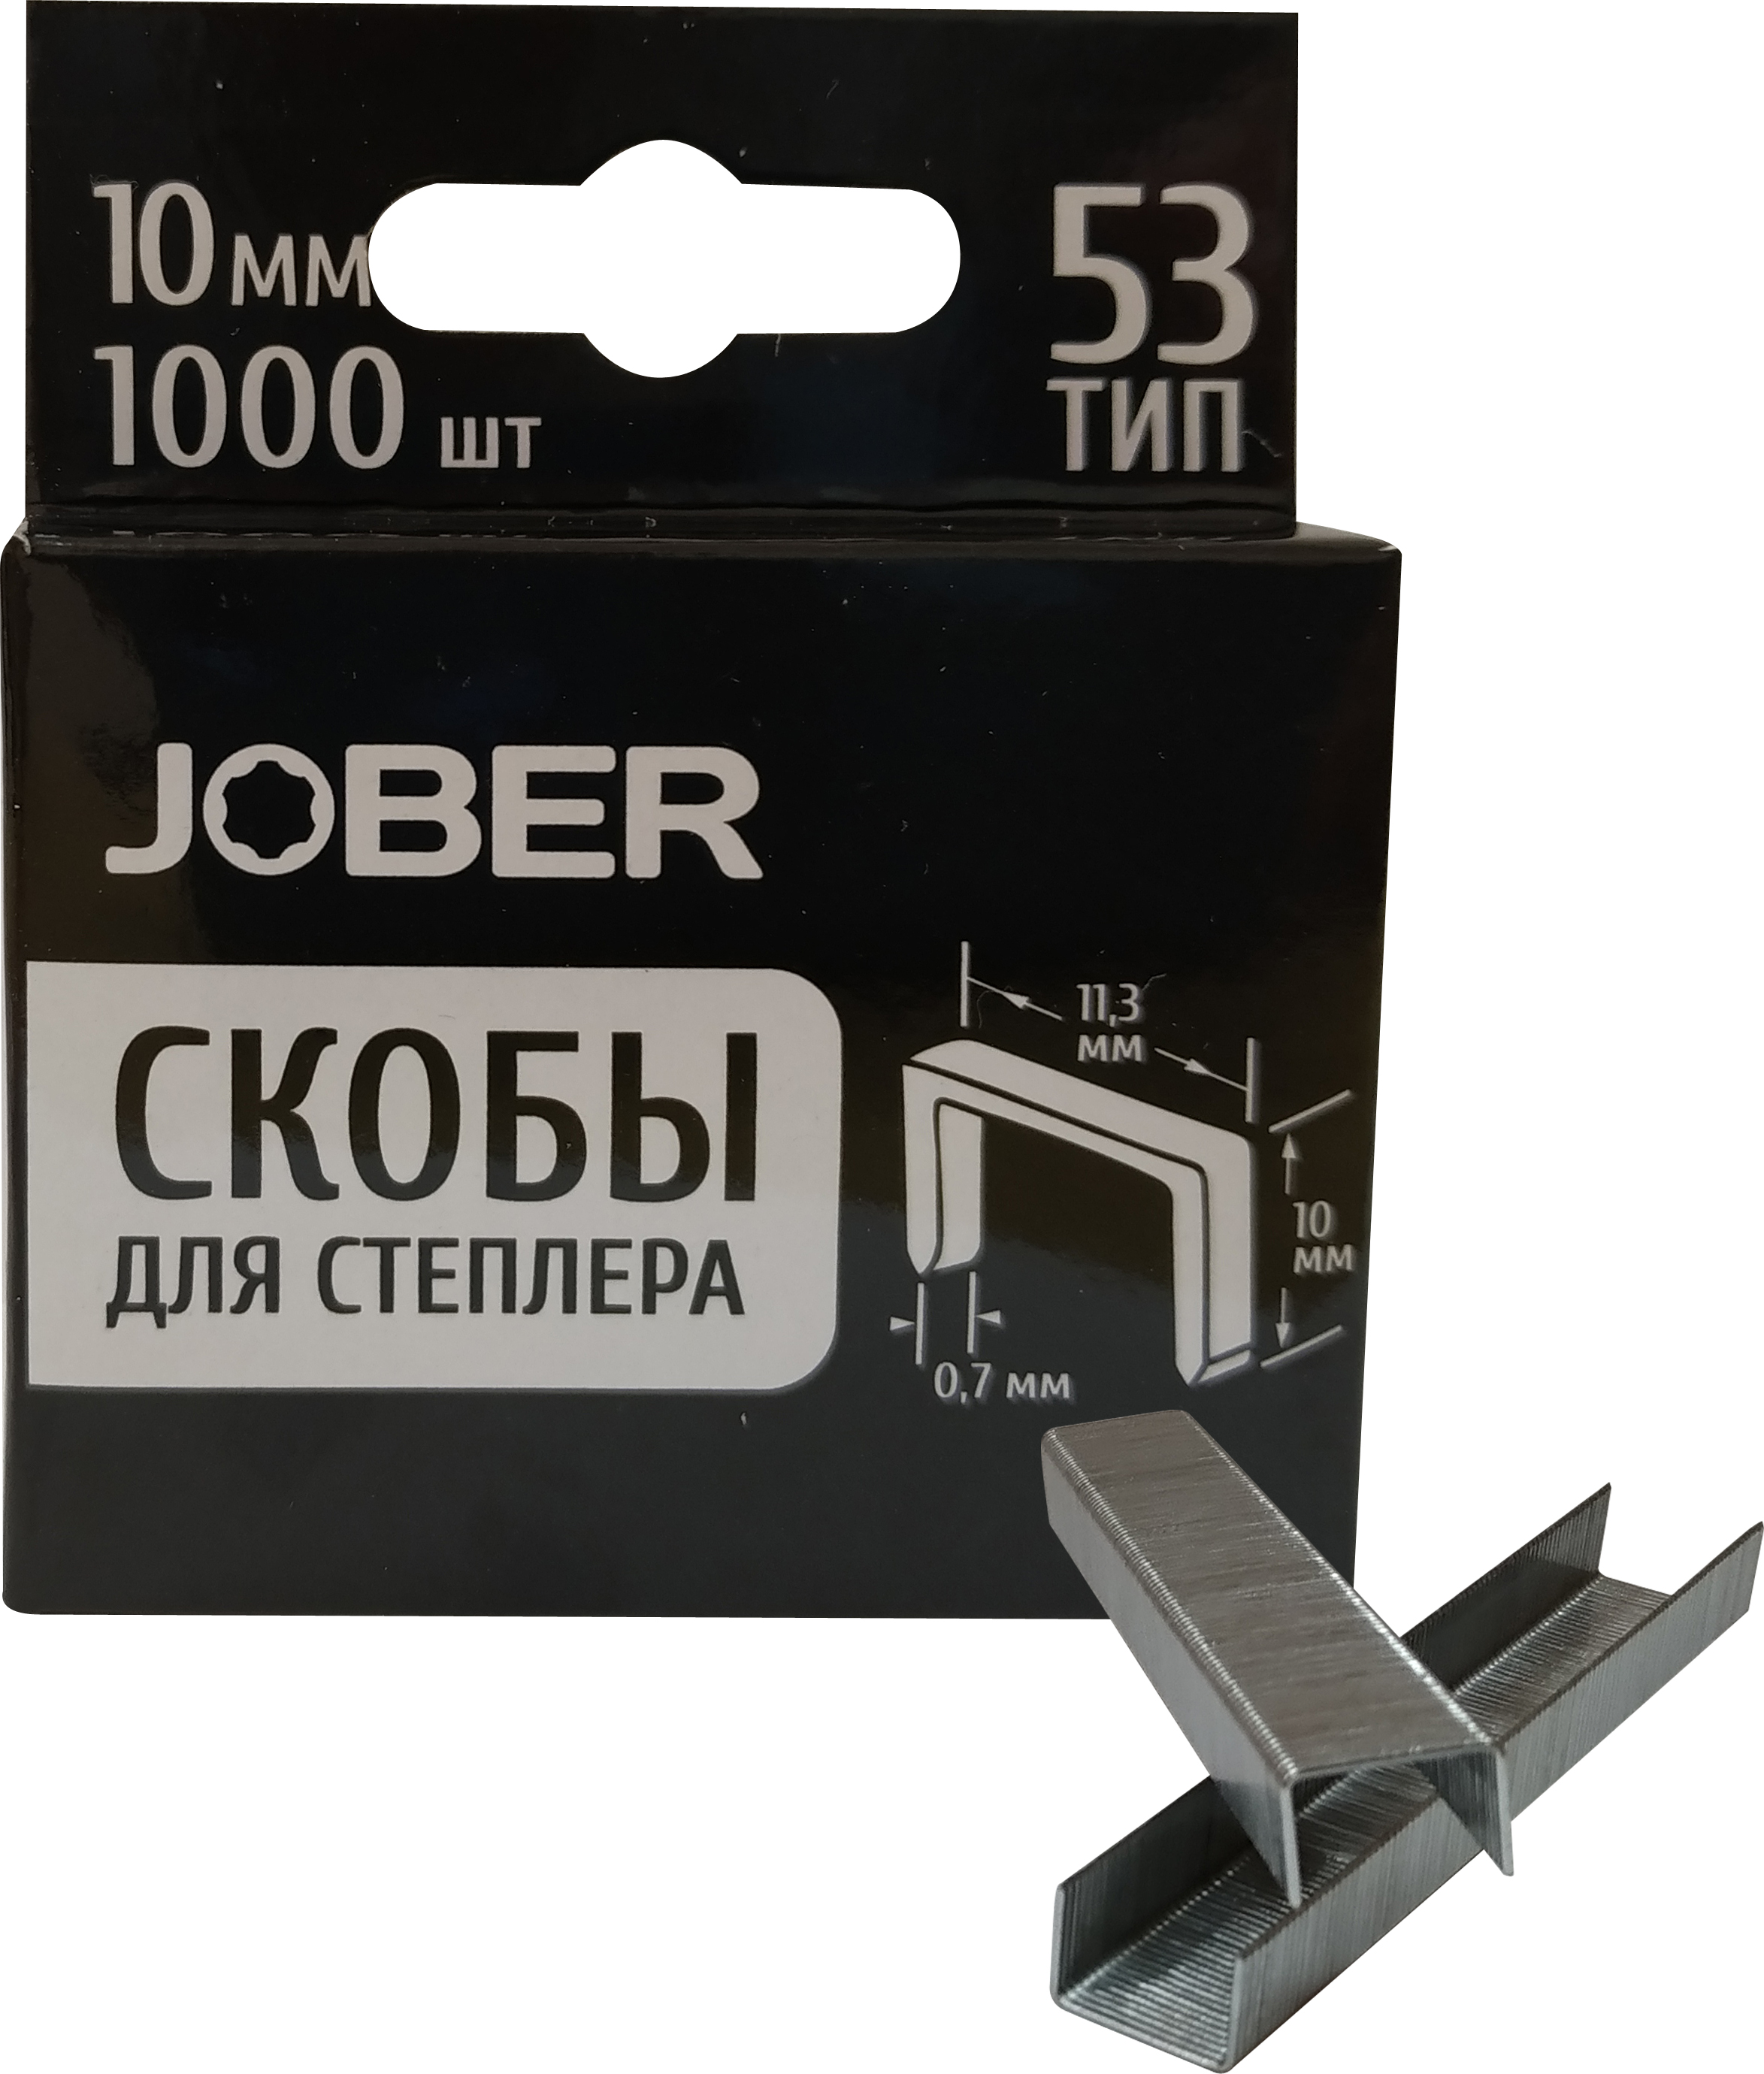 Скобы для степлера Тип 53 10мм 1000шт закаленные Jober/037